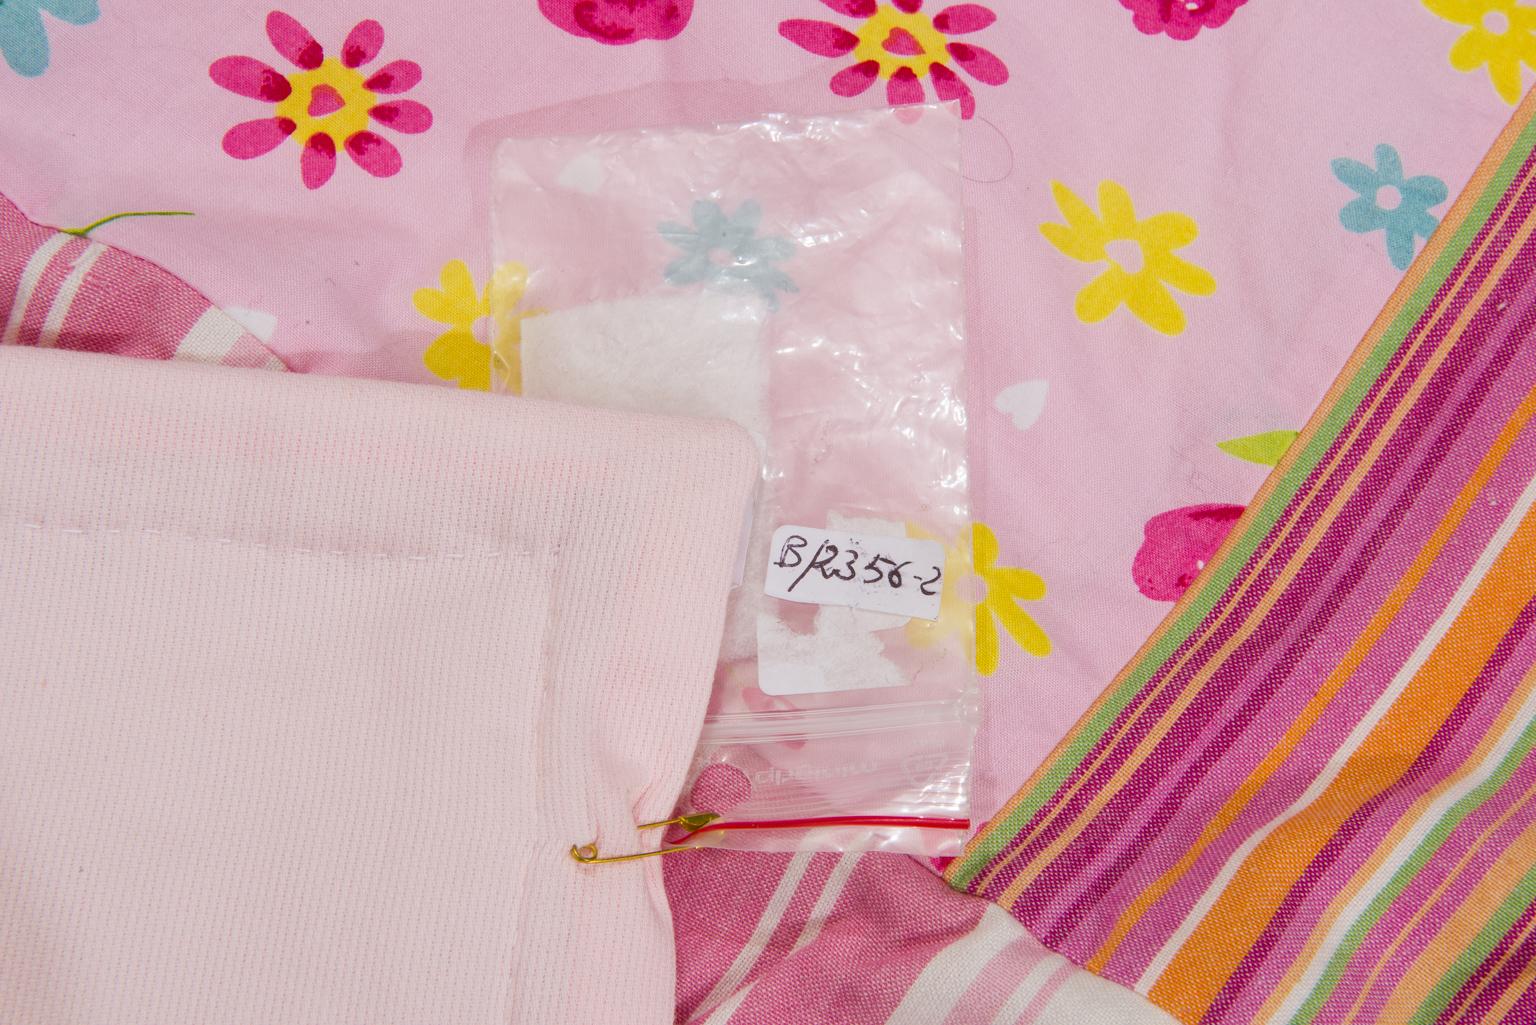 Hübsche gepolsterte Decke oder Quilt Patchwork für das Bett eines Baby-Mädchens, Anwendungen komplett handgefertigt: Einzelstück,
Das ist ein guter Preis für abschließende Aktivitäten.
B/2356-2.